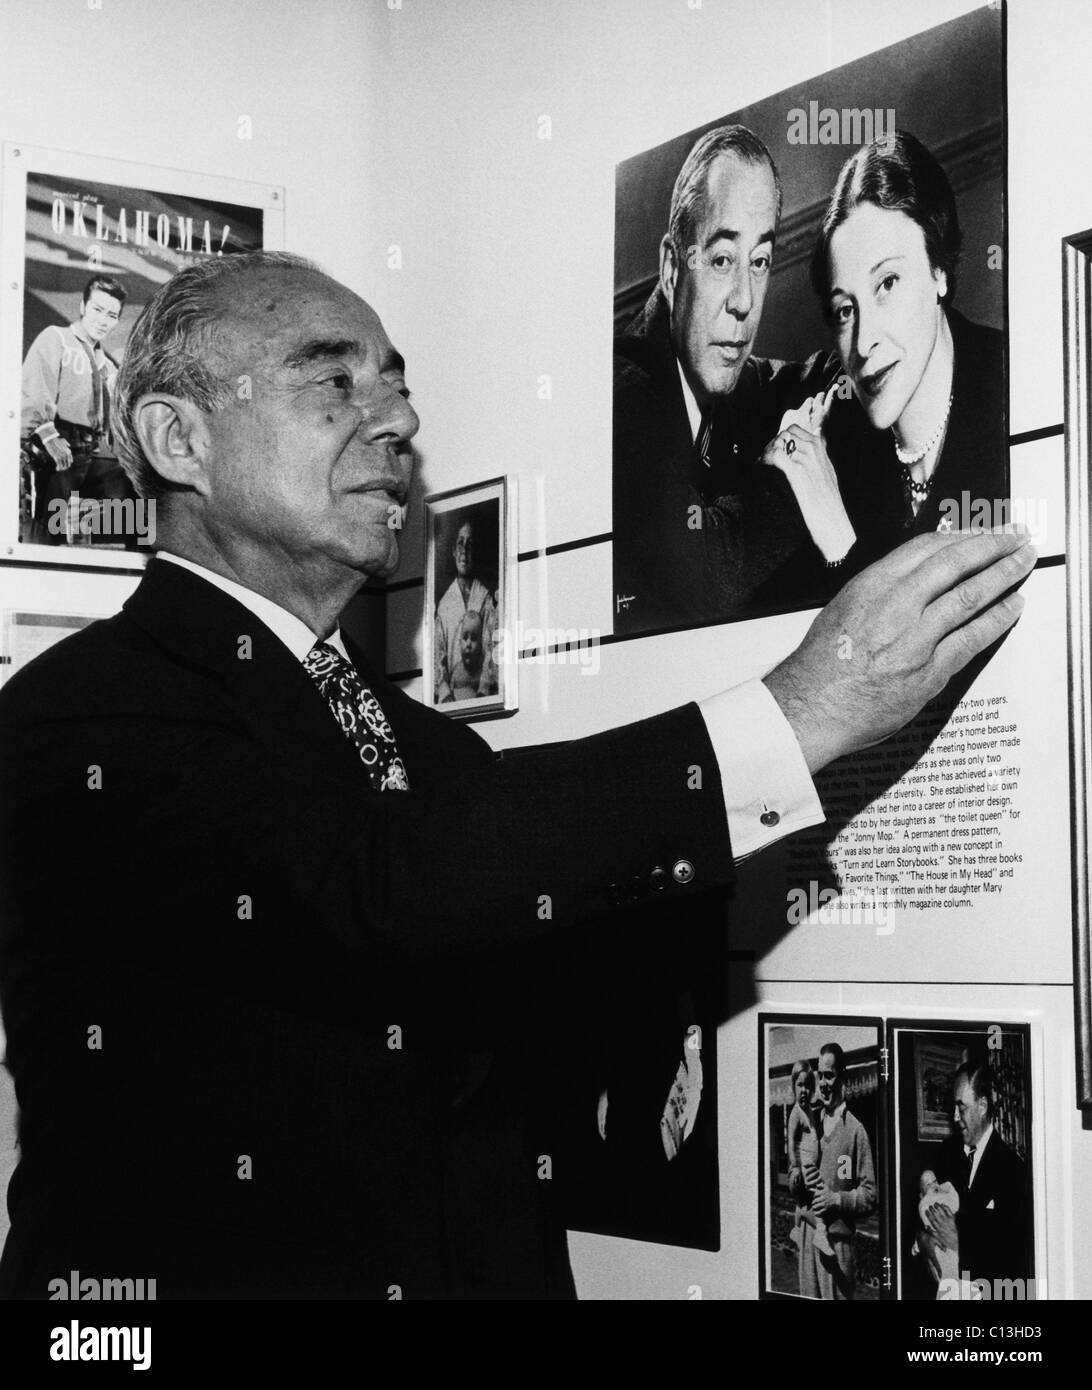 Richard Rodgers (1902-1979), compositeur américain, au New York's Hallmark Gallery, pour une exposition en son honneur, sur la droite se trouve une photographie de Rodgers et son épouse, Dorothy Rodgers, vers 1972. Banque D'Images